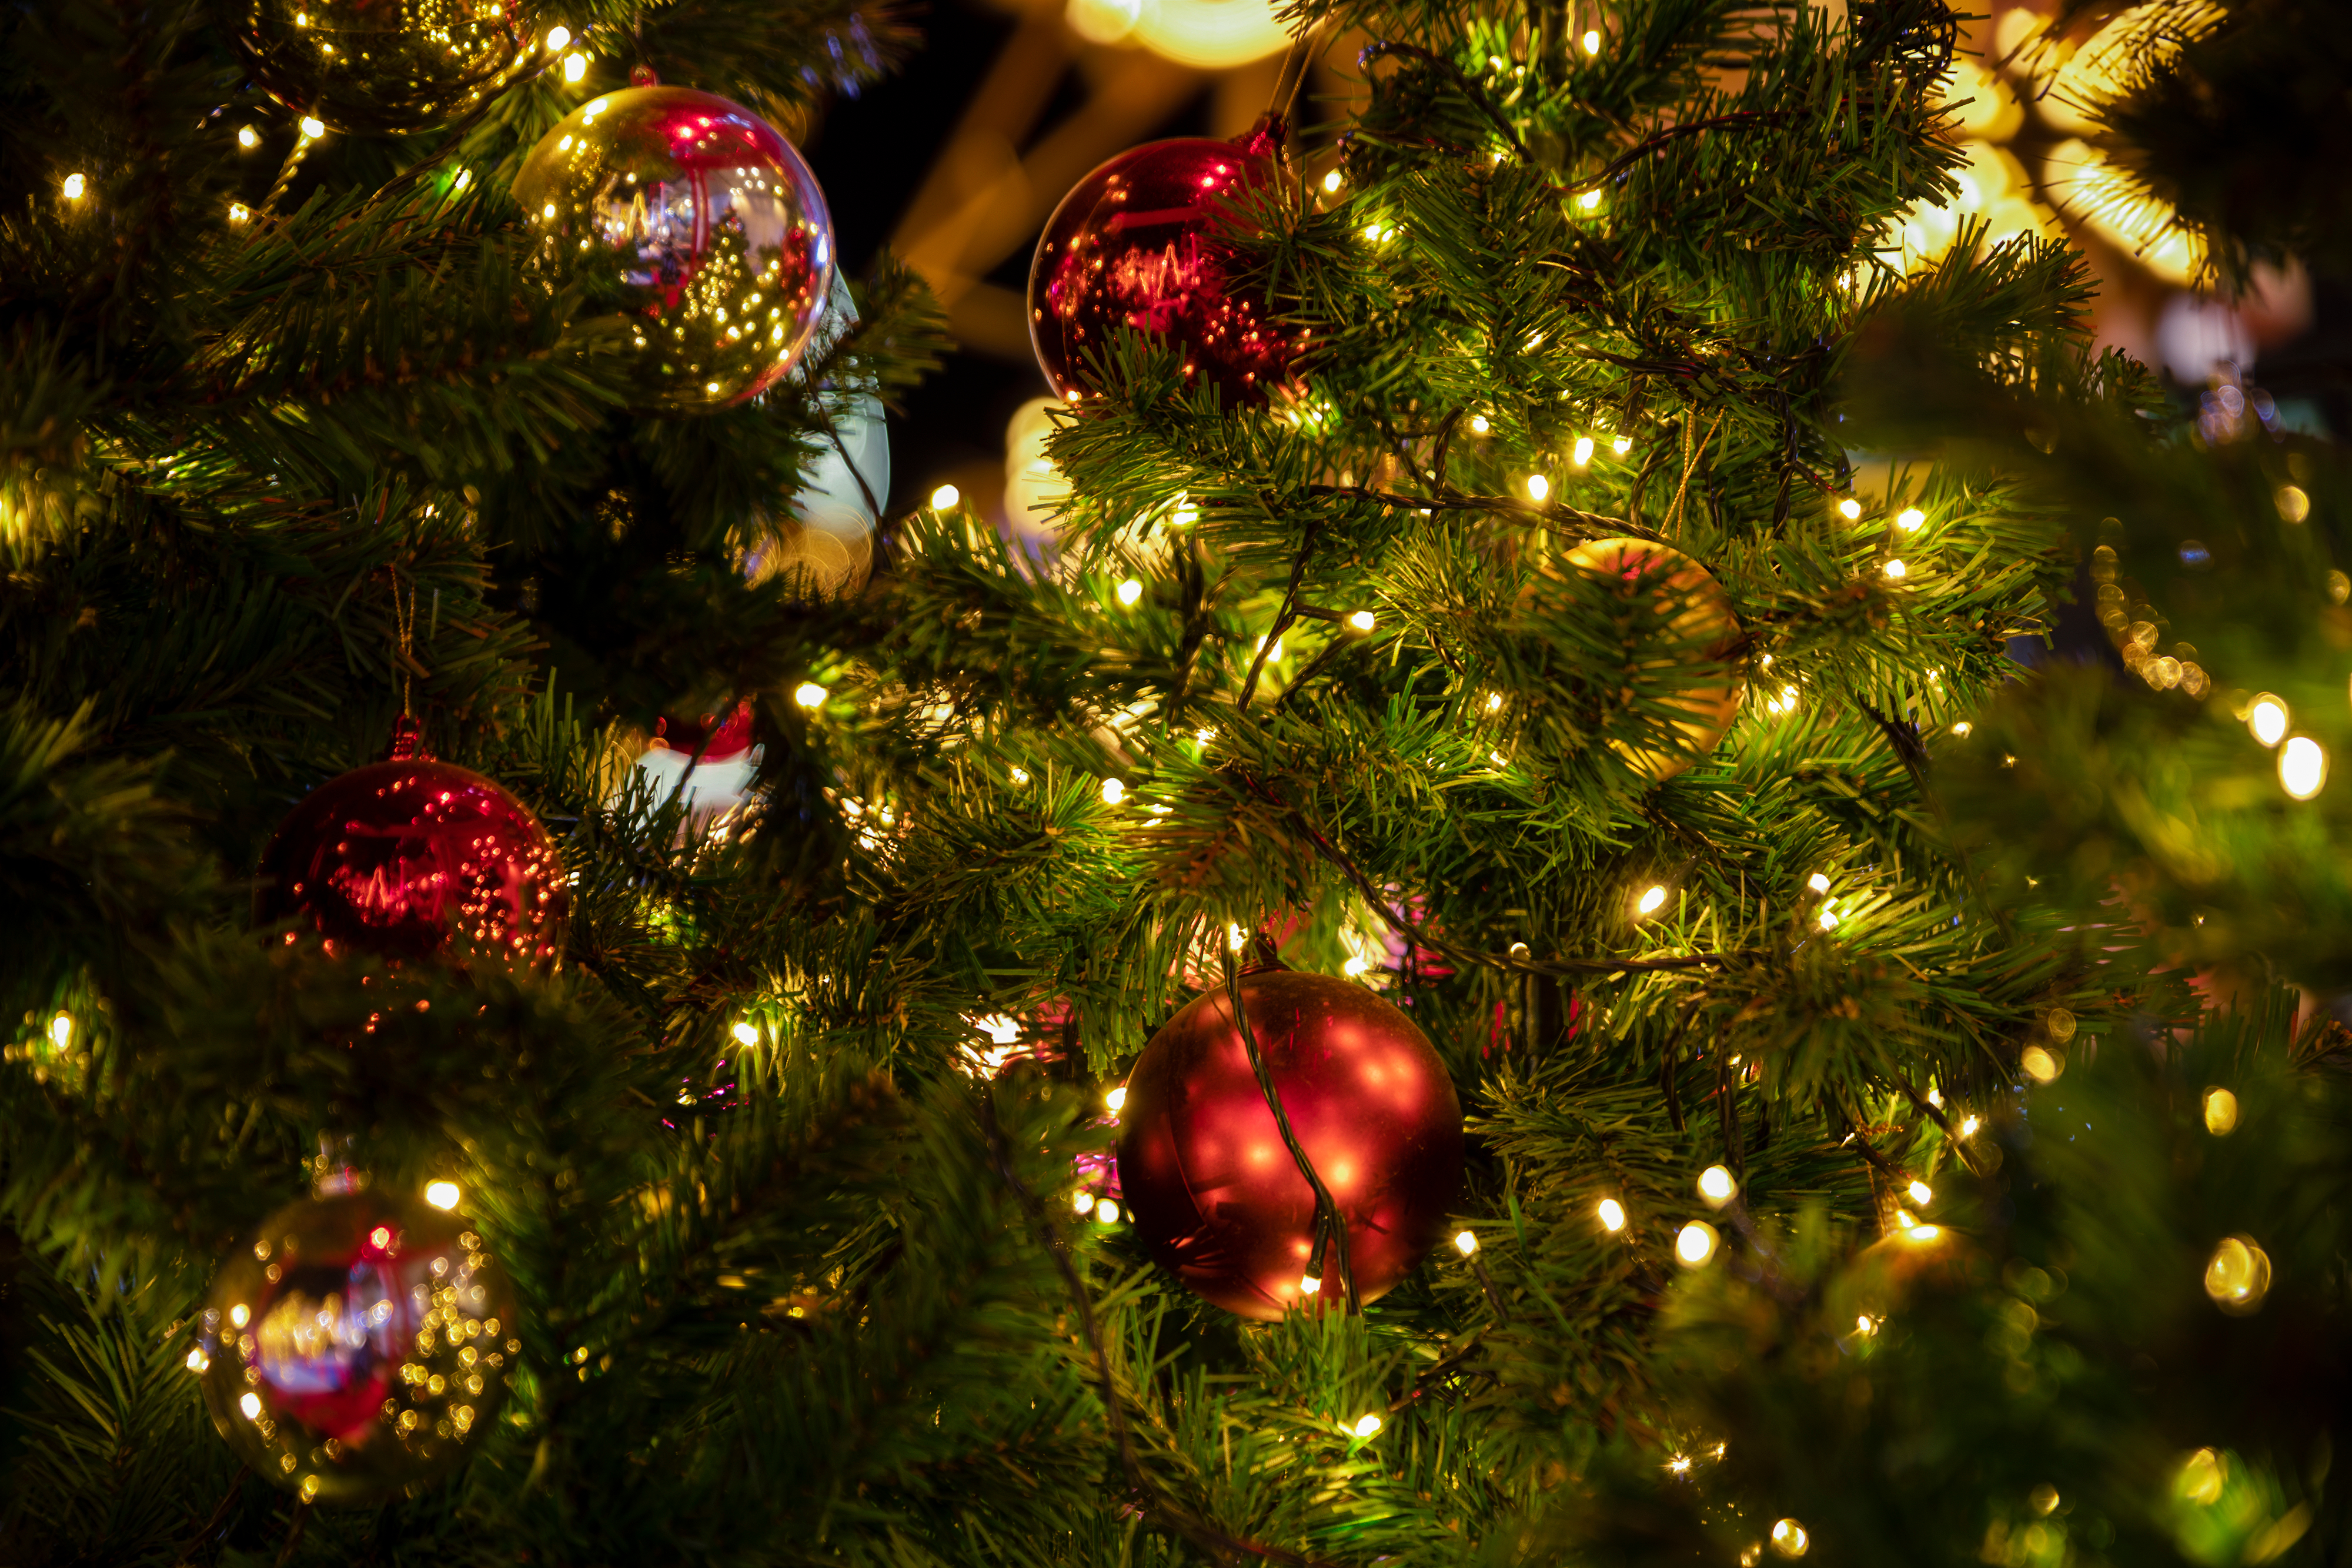     Un arbre de Noël et des cadeaux pour plus de 500 enfants de l’aide sociale

